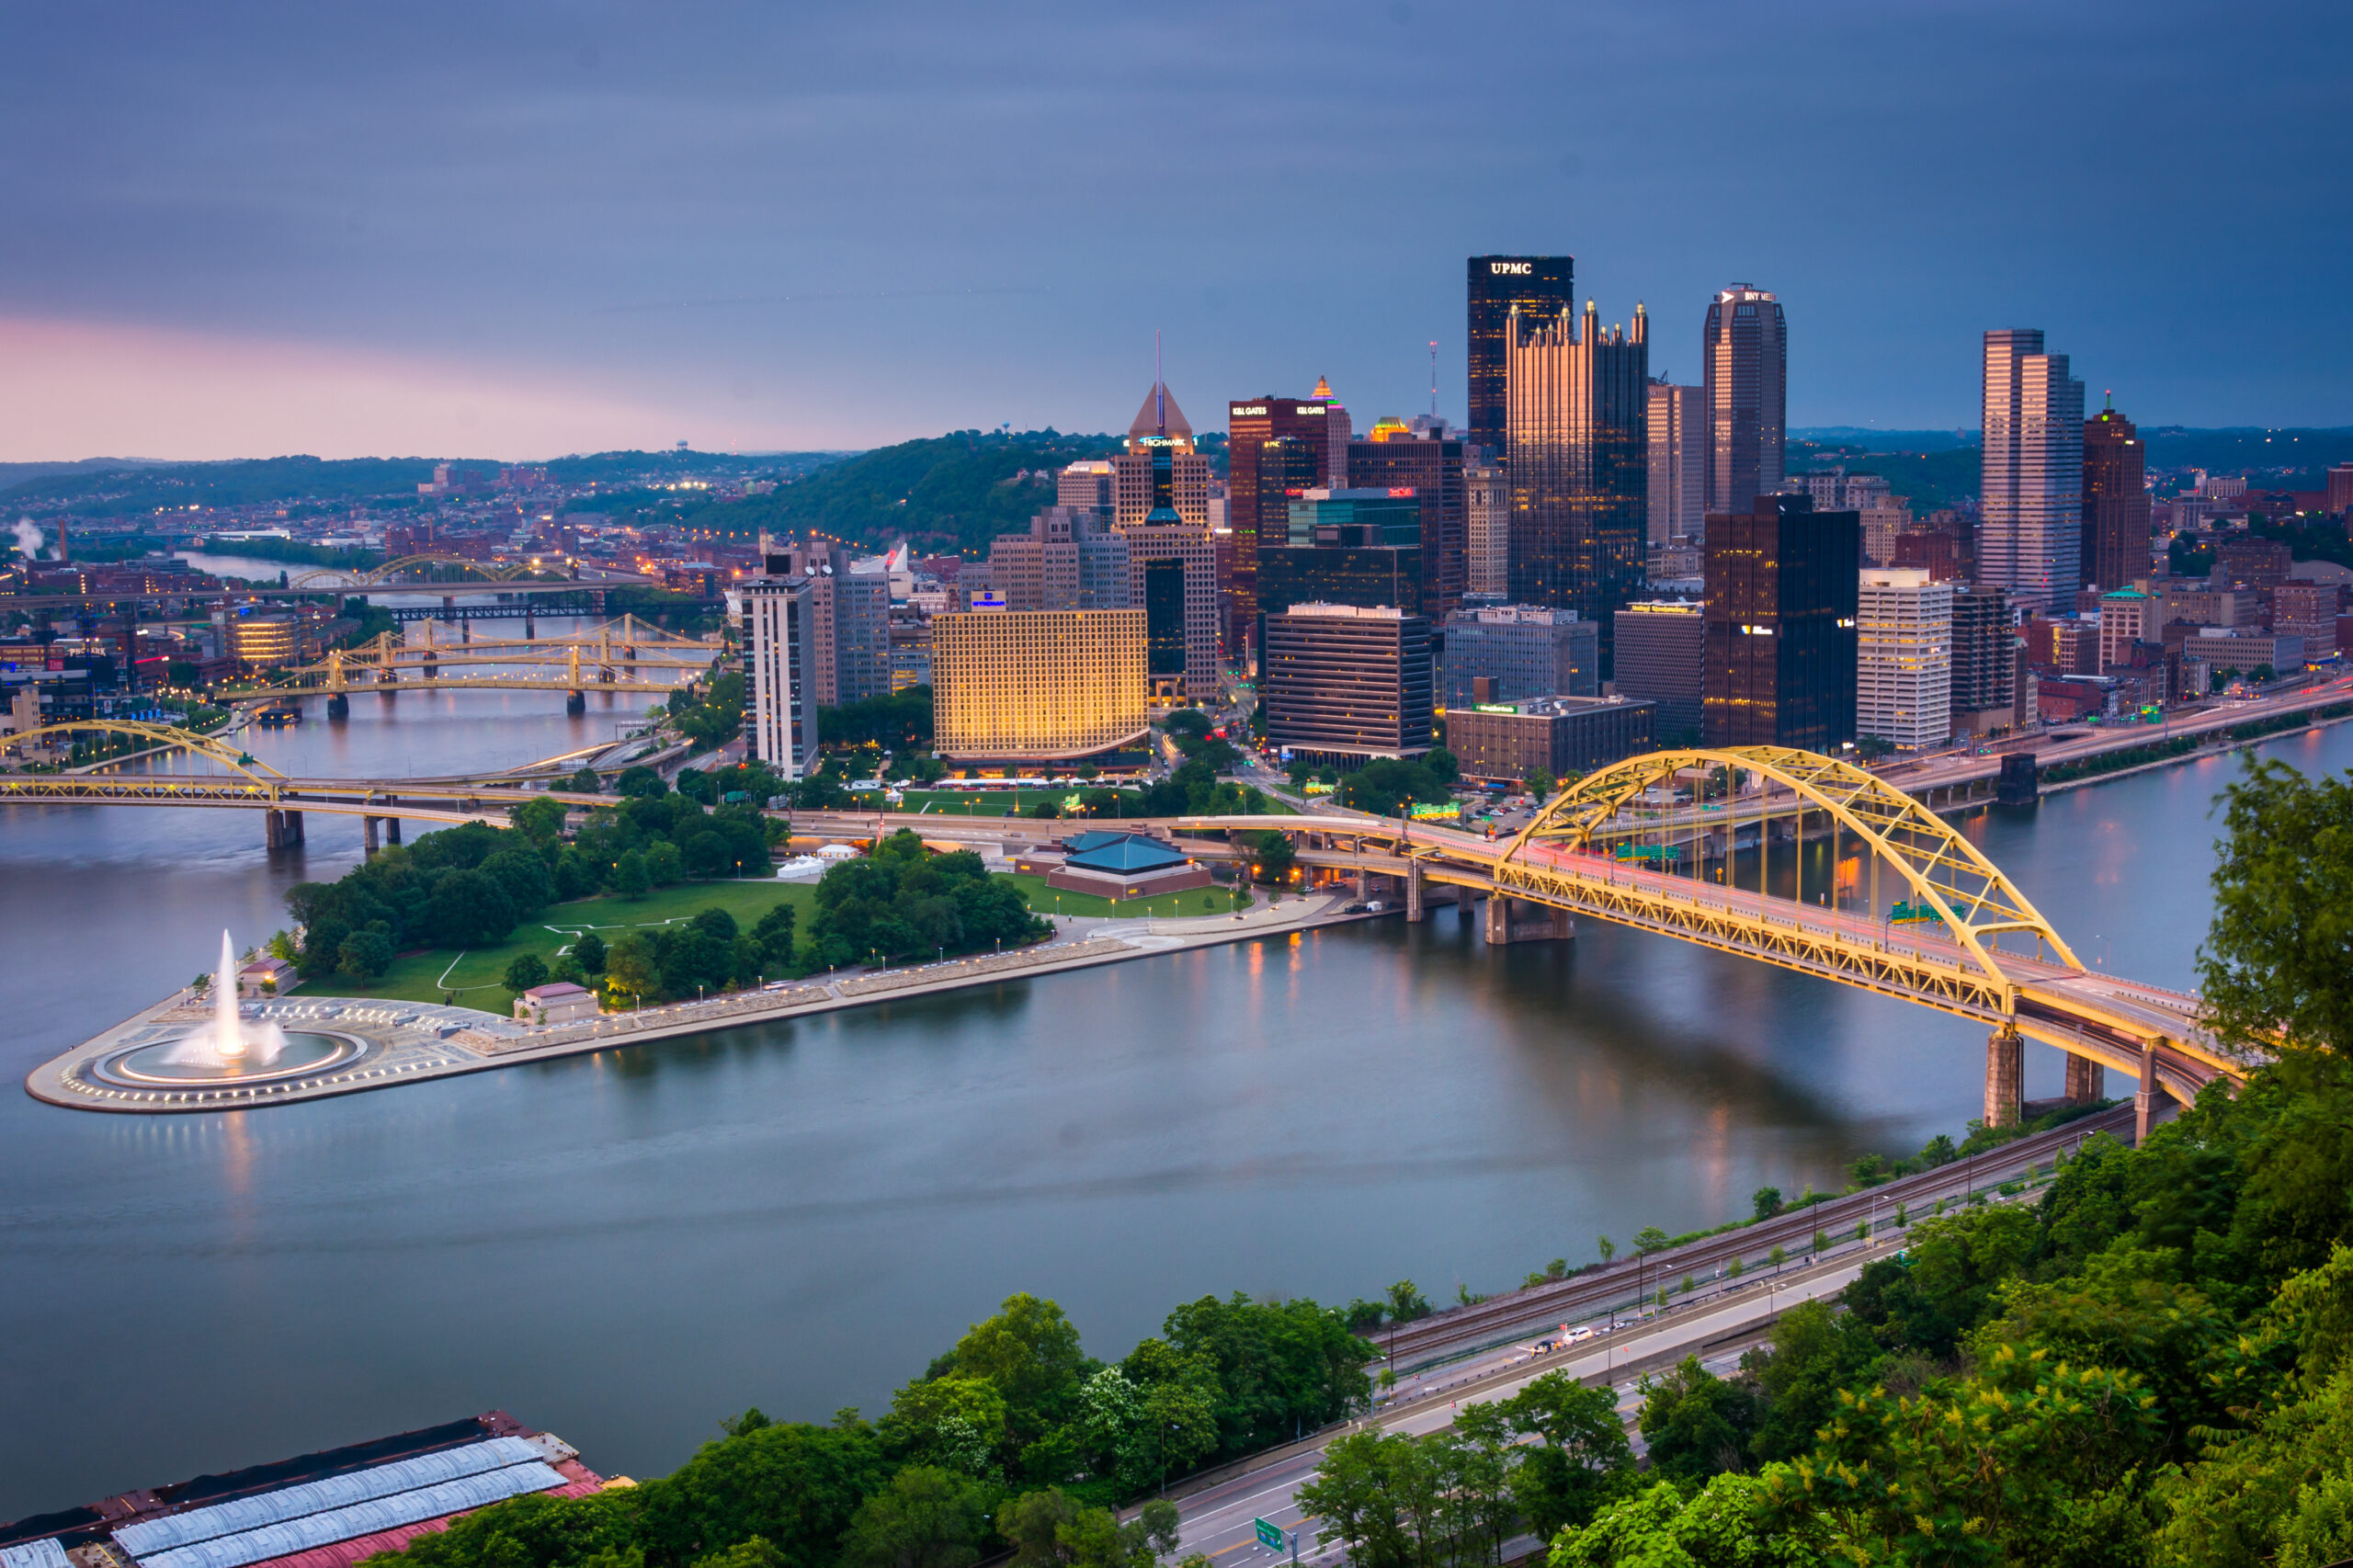 Yellow Pittsburgh Bridge and City